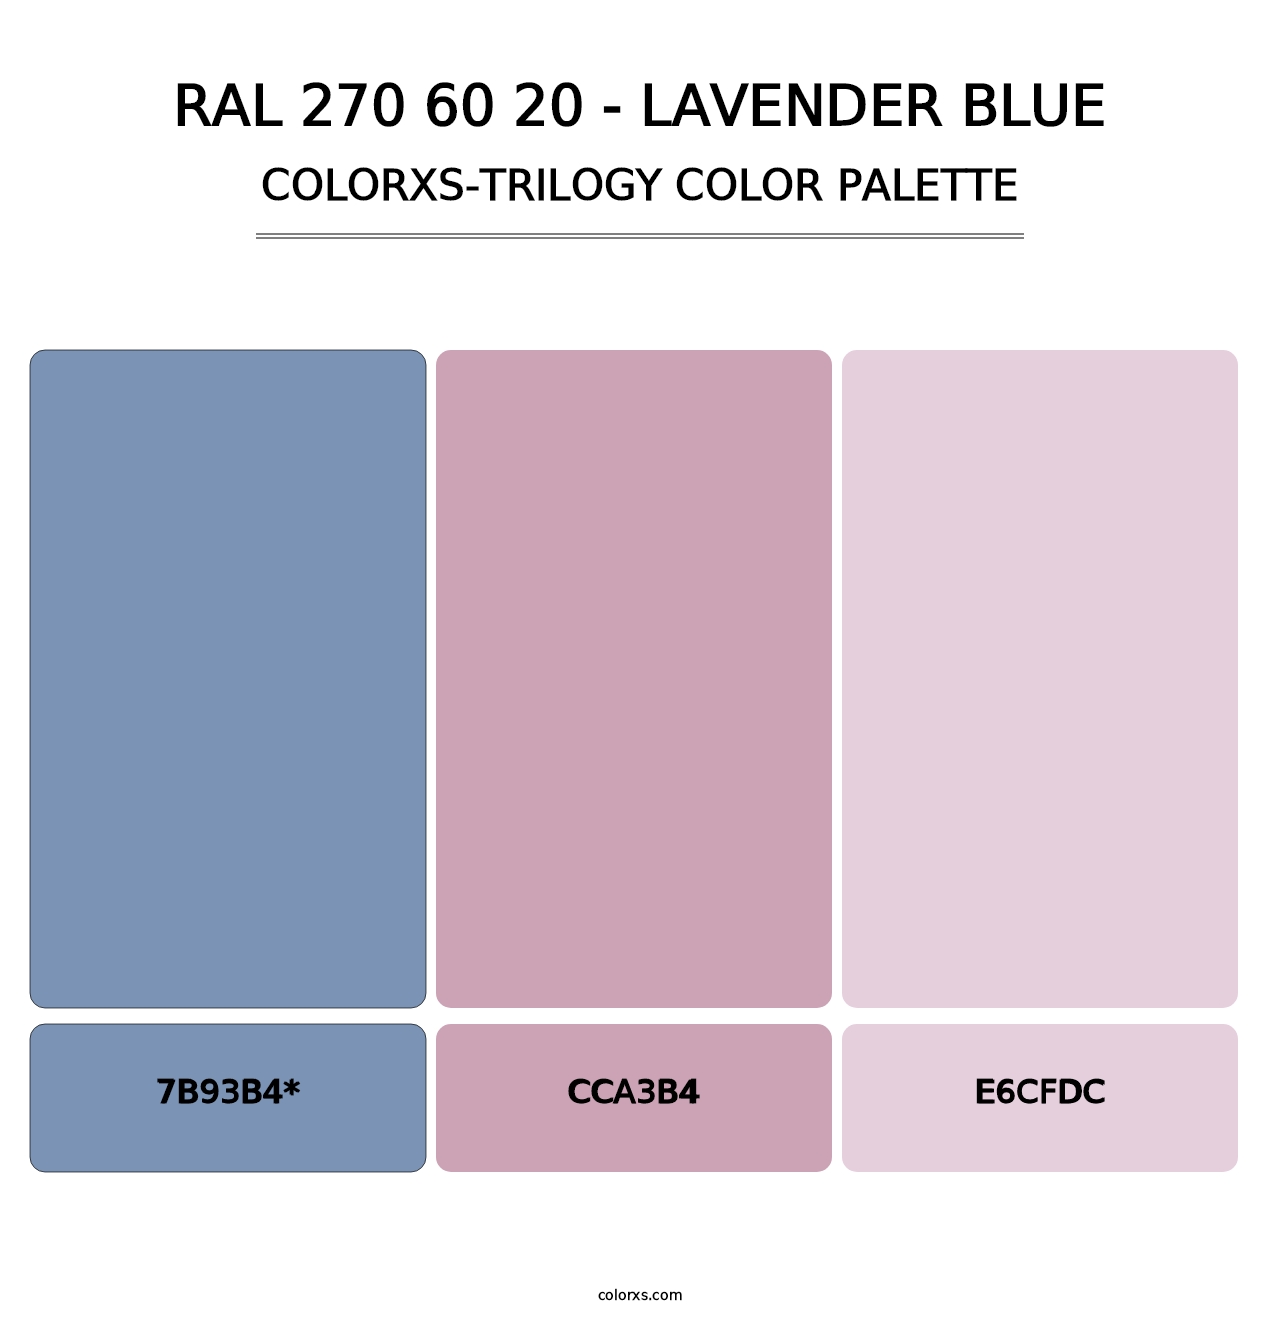 RAL 270 60 20 - Lavender Blue - Colorxs Trilogy Palette